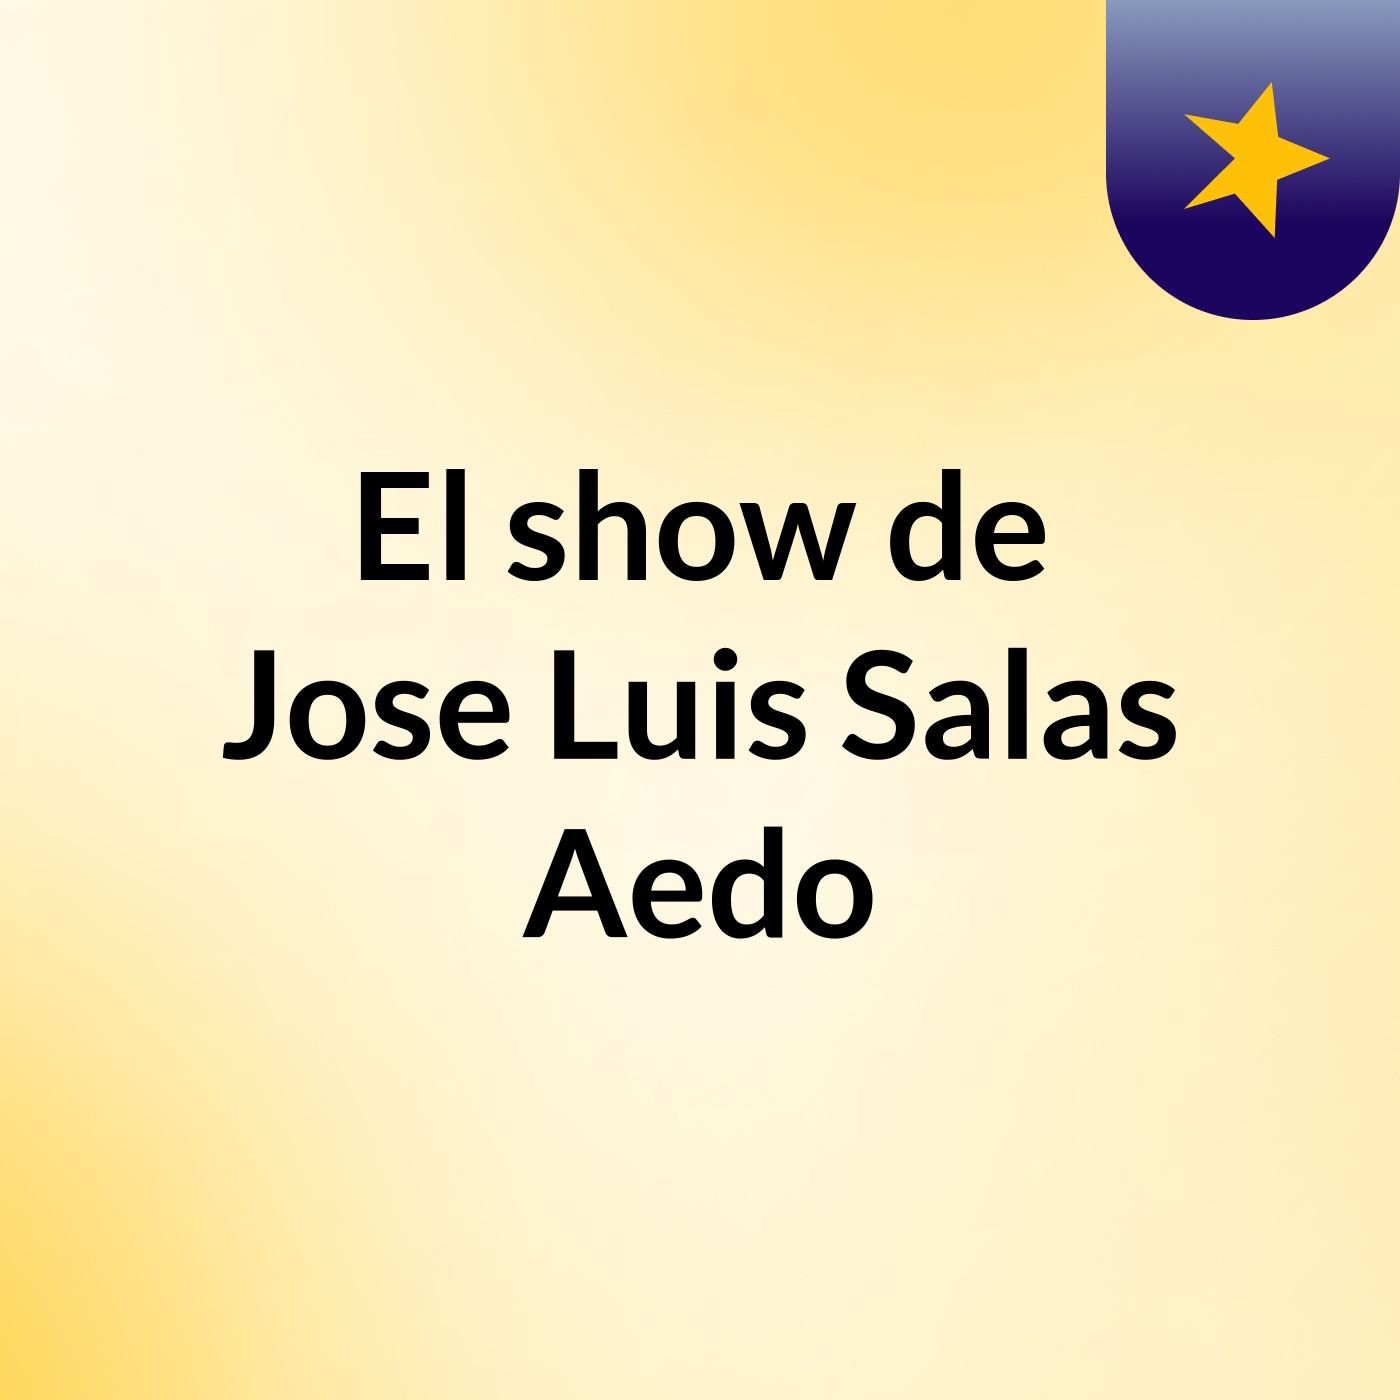 El show de Jose Luis Salas Aedo